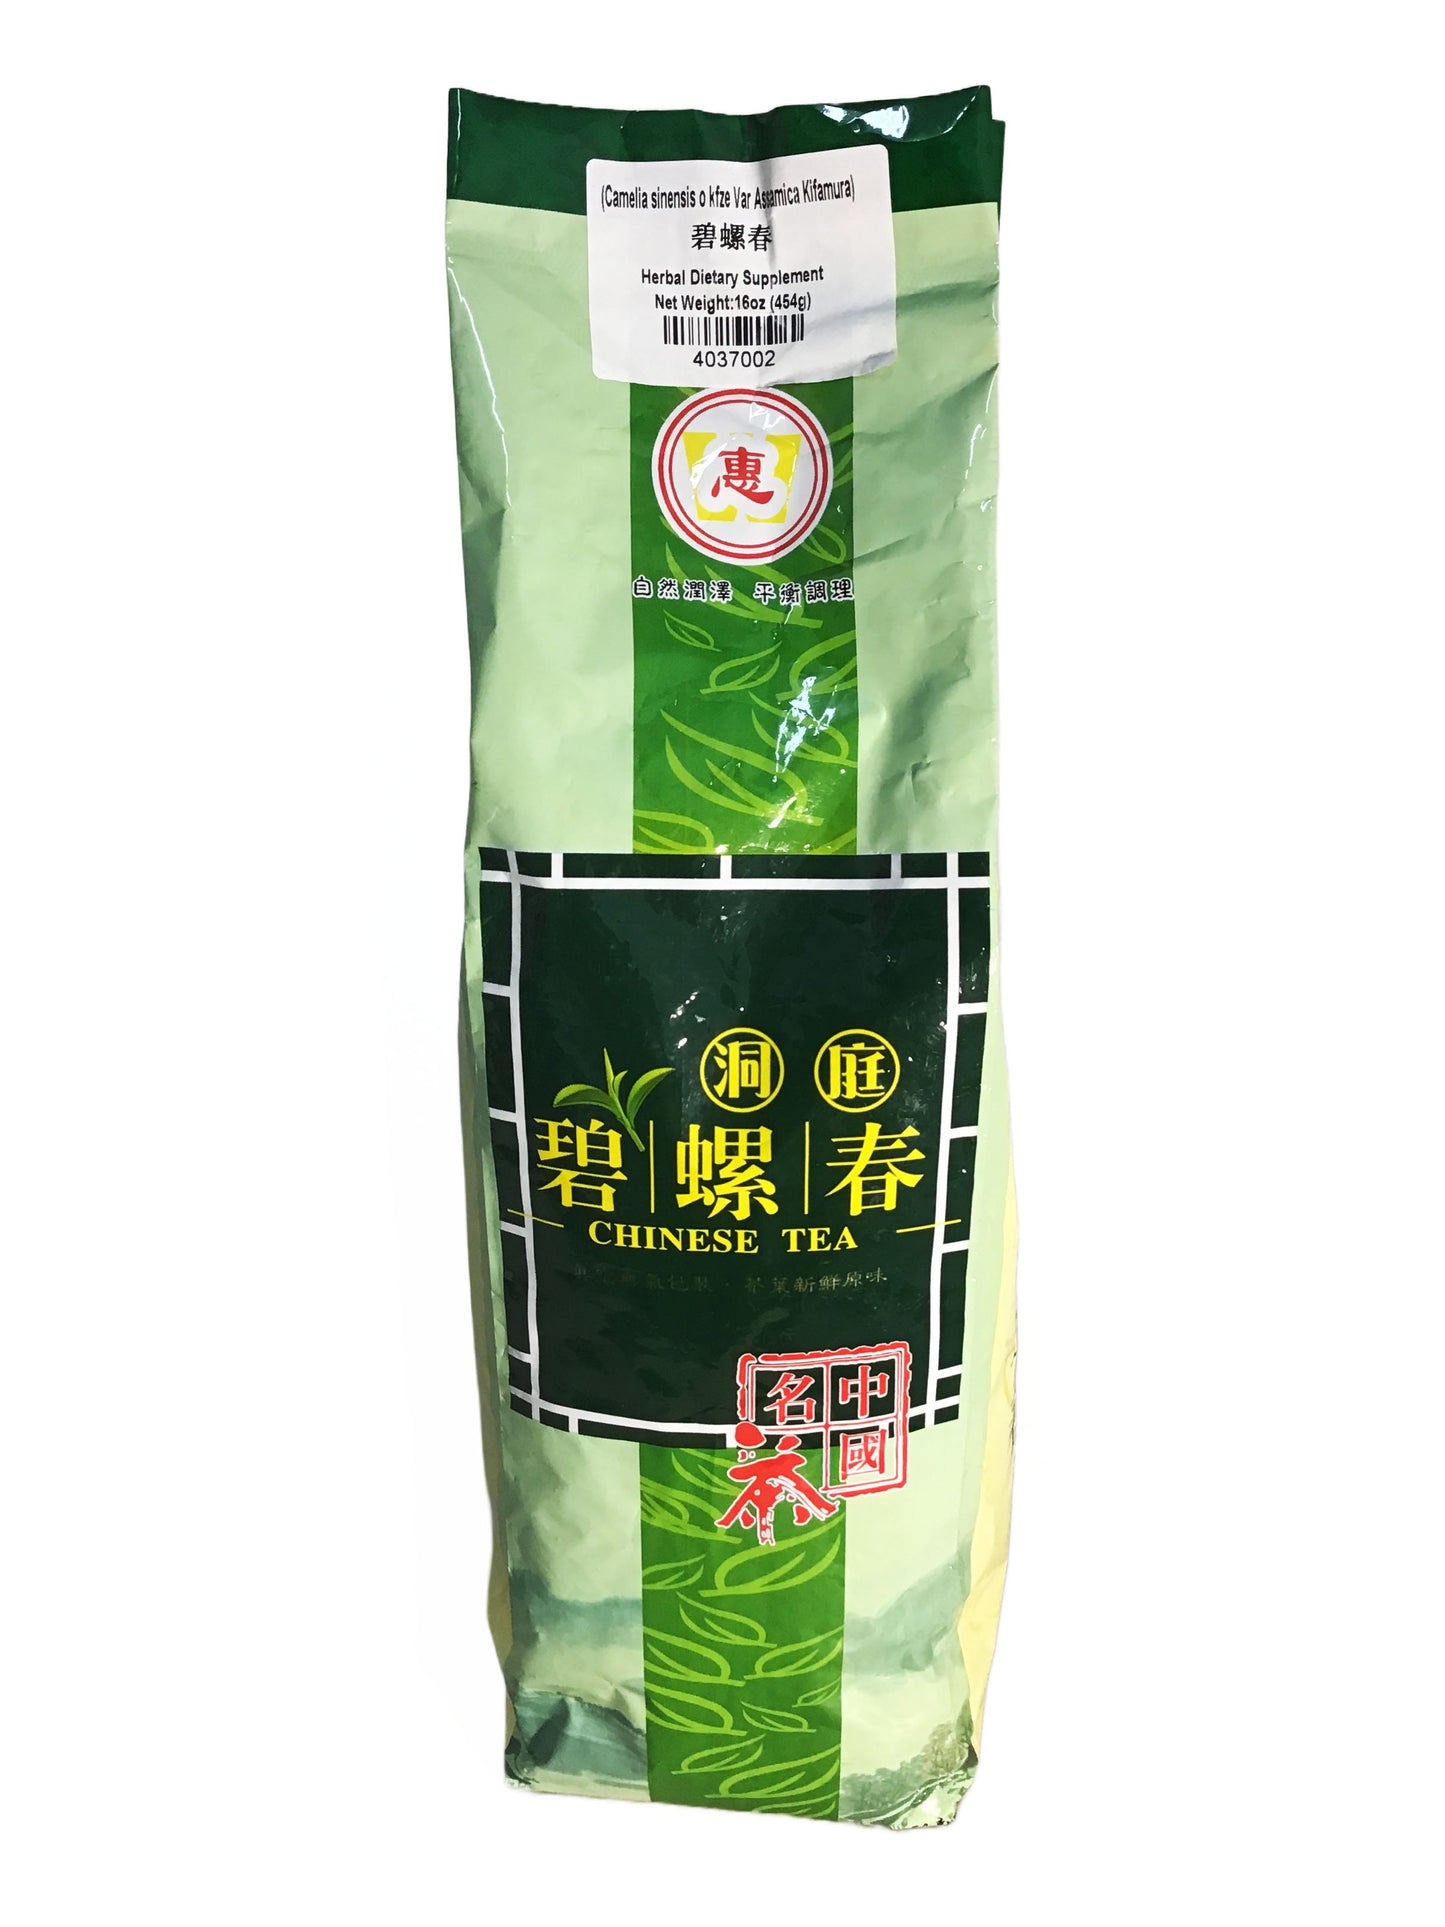 Chinese Green Tea Bi Luo Chun 碧螺春茶 16oz